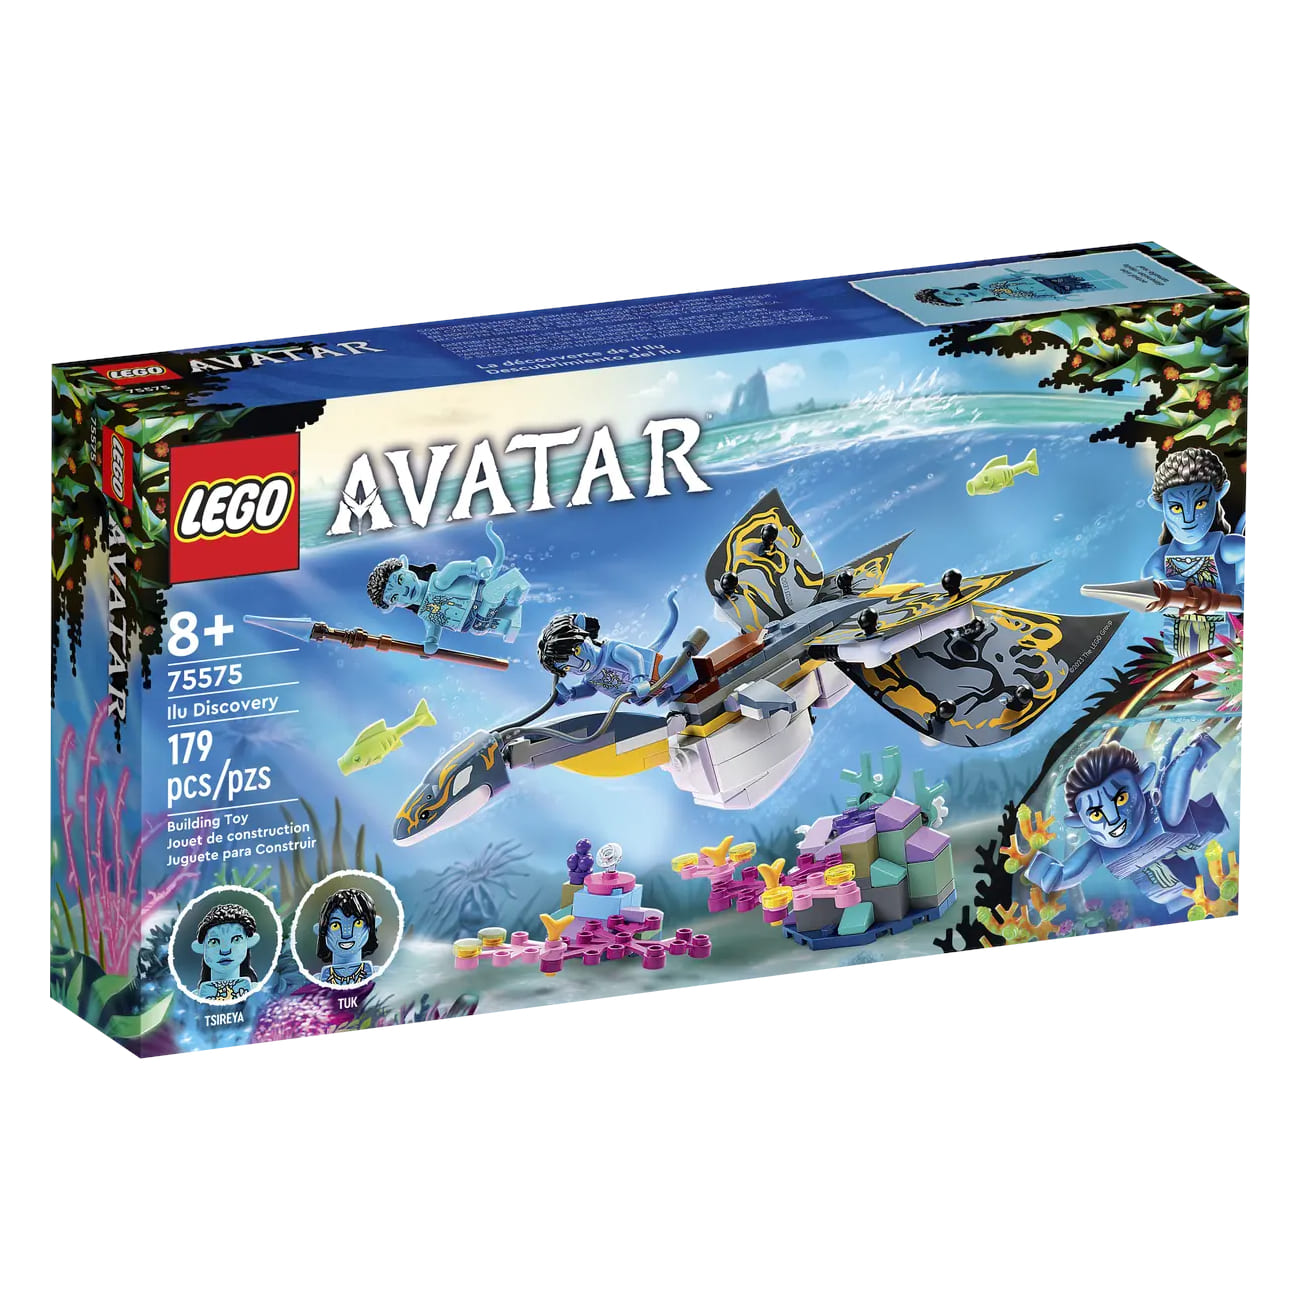 Конструктор LEGO Avatar Ilu Discovery 75575, 179 деталей конструктор lego 75575 avatar открытие илу